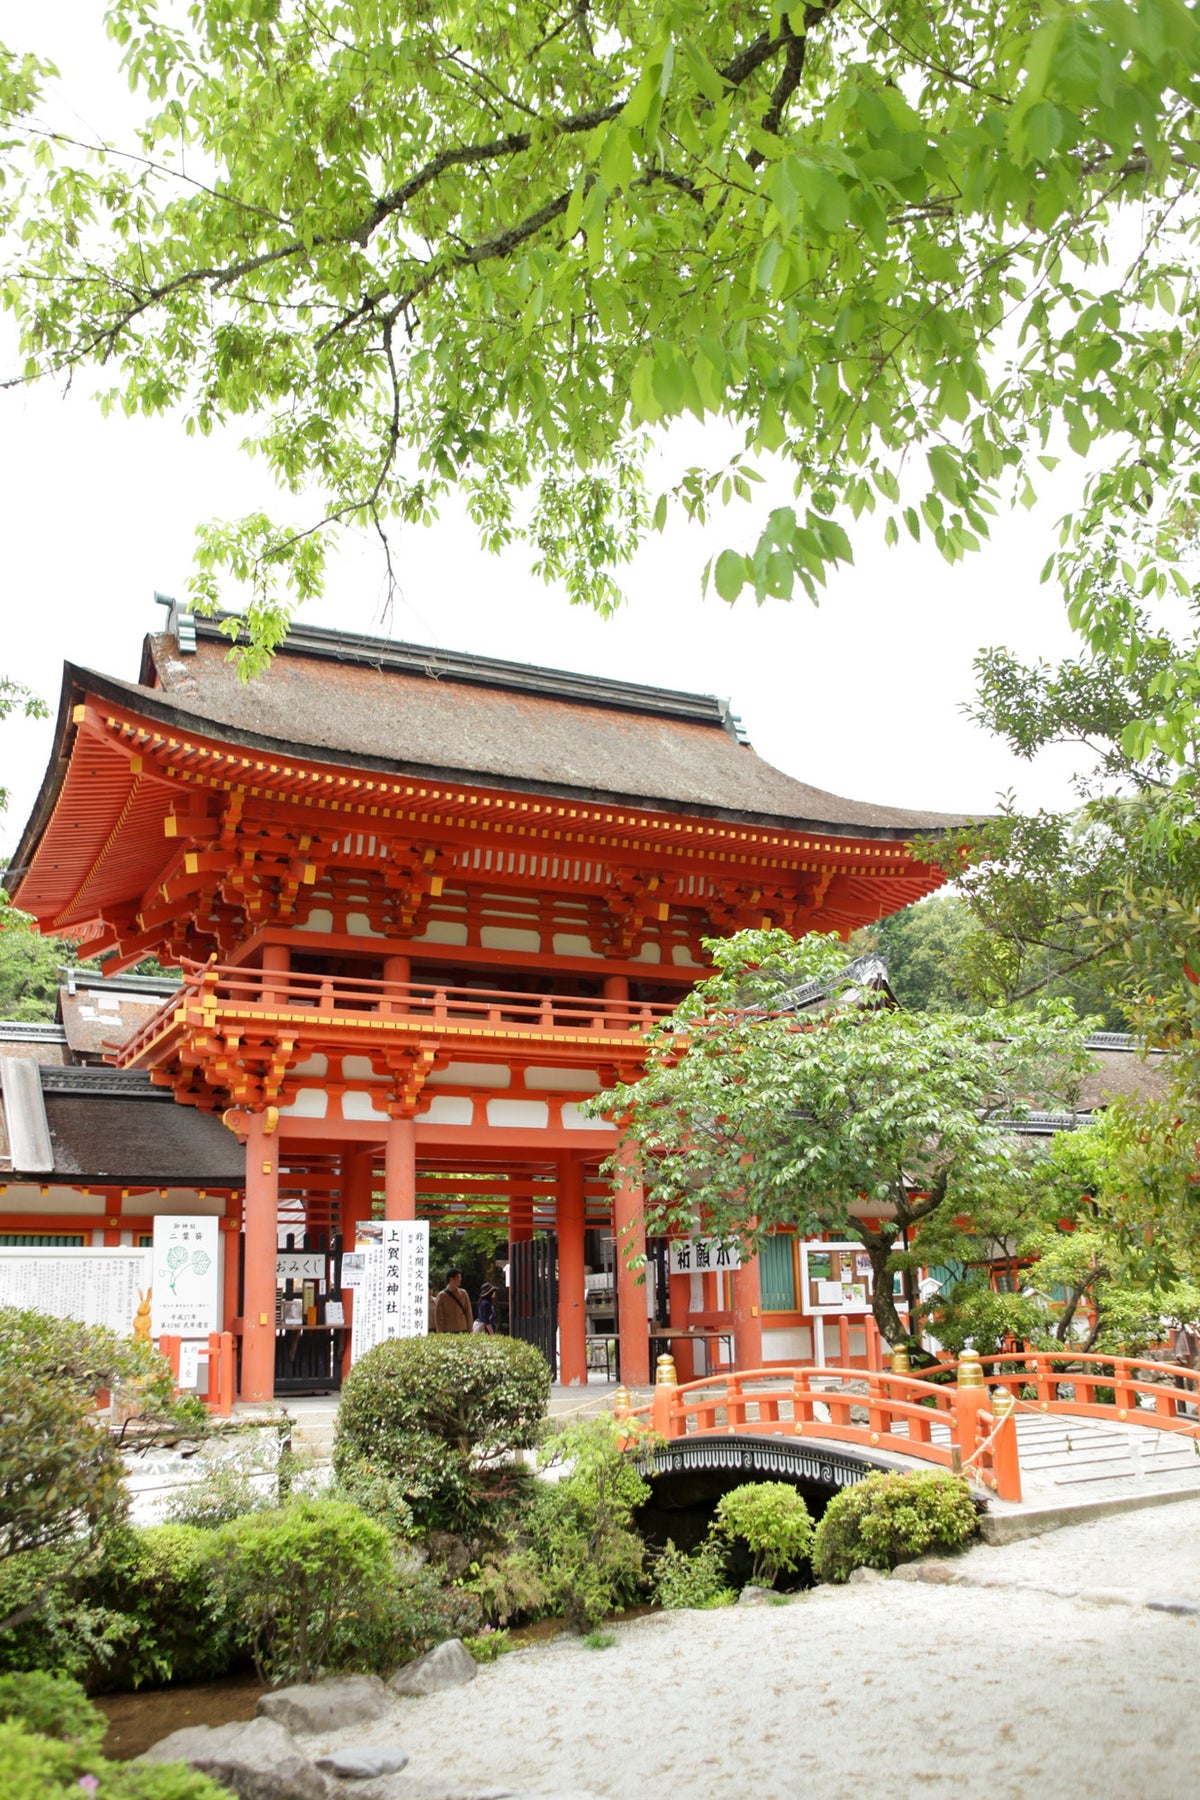 世界遺産に登録されている上賀茂神社。国宝2棟、重要文化財41棟が広大な敷地の中に存在します。